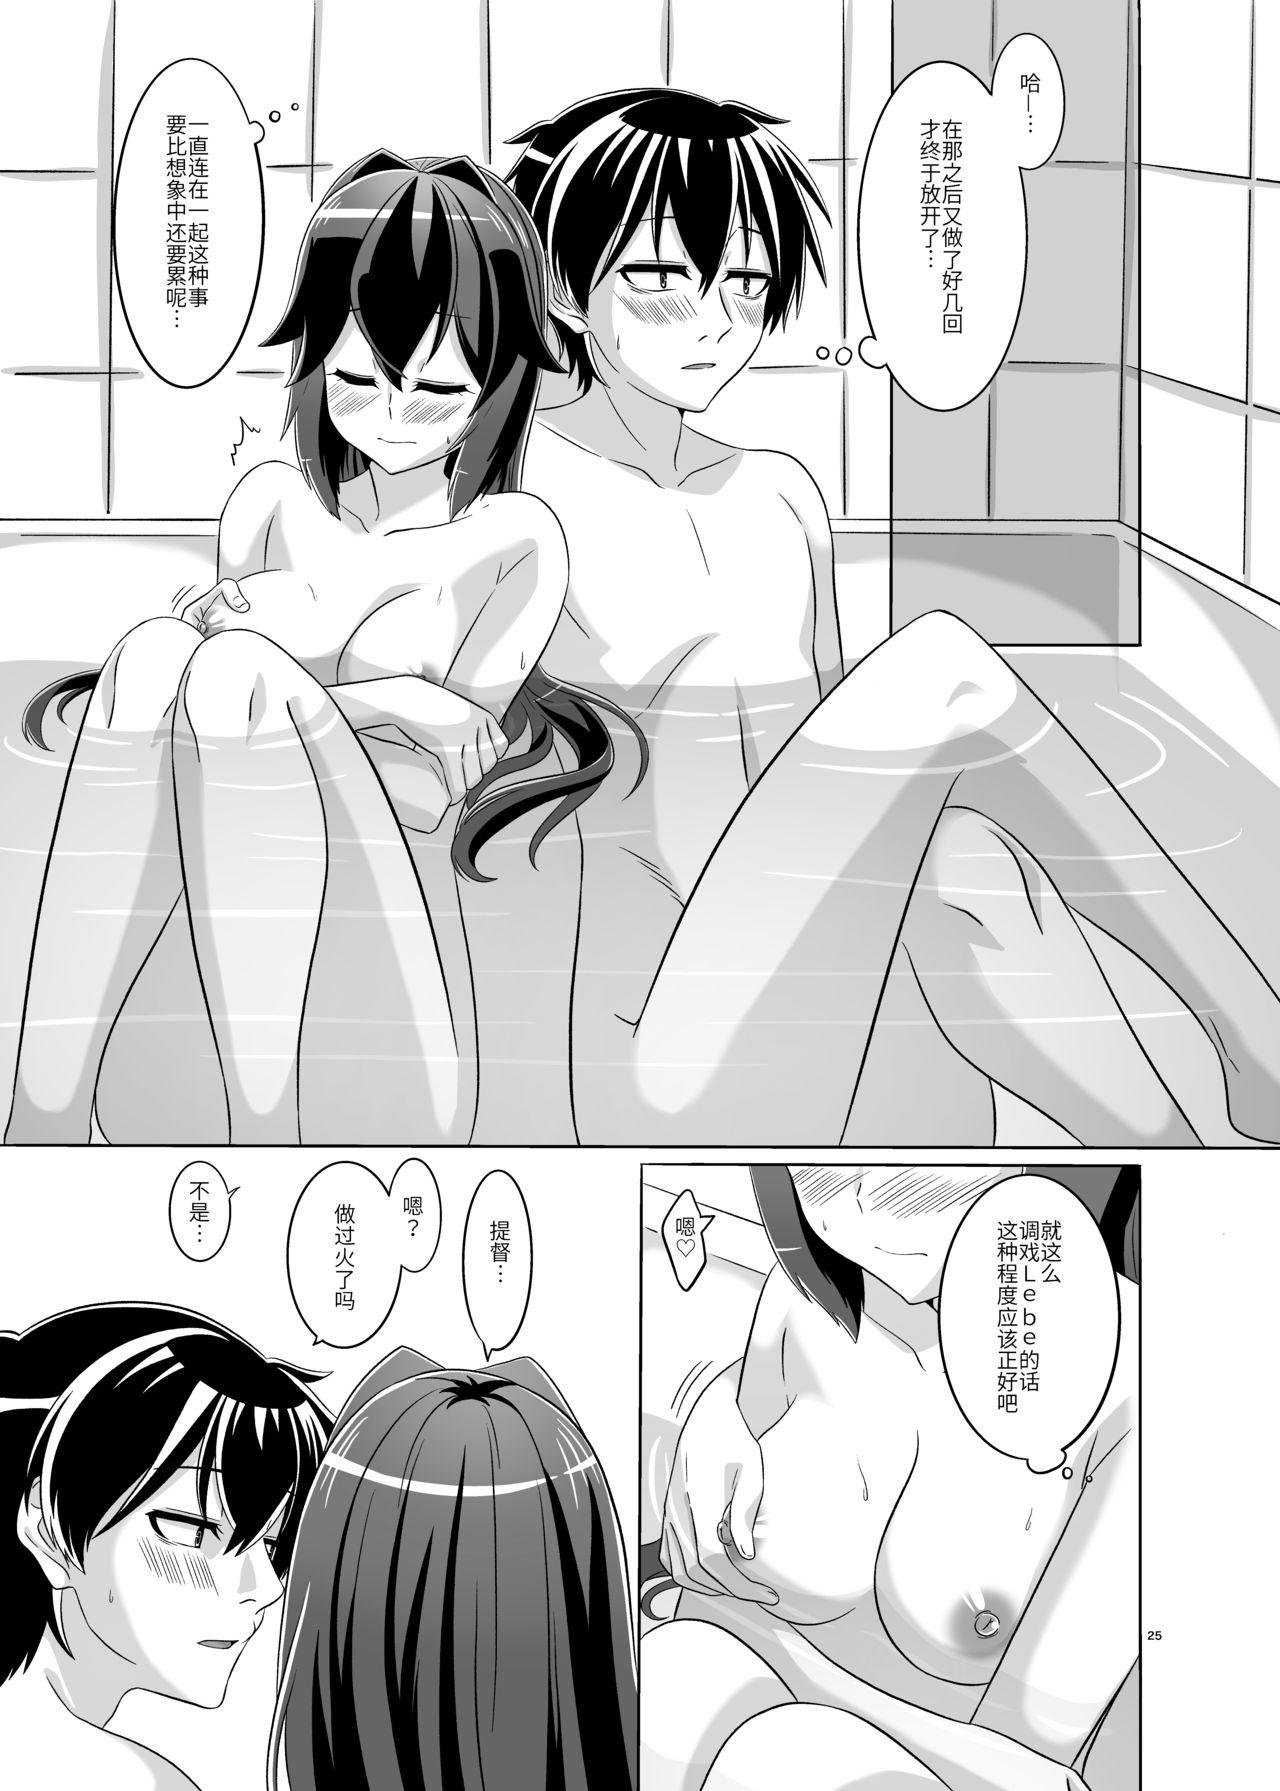 Woman Fucking Itsumo no yoru futari no yotogi⑵ - Warship girls Gay Straight - Page 26